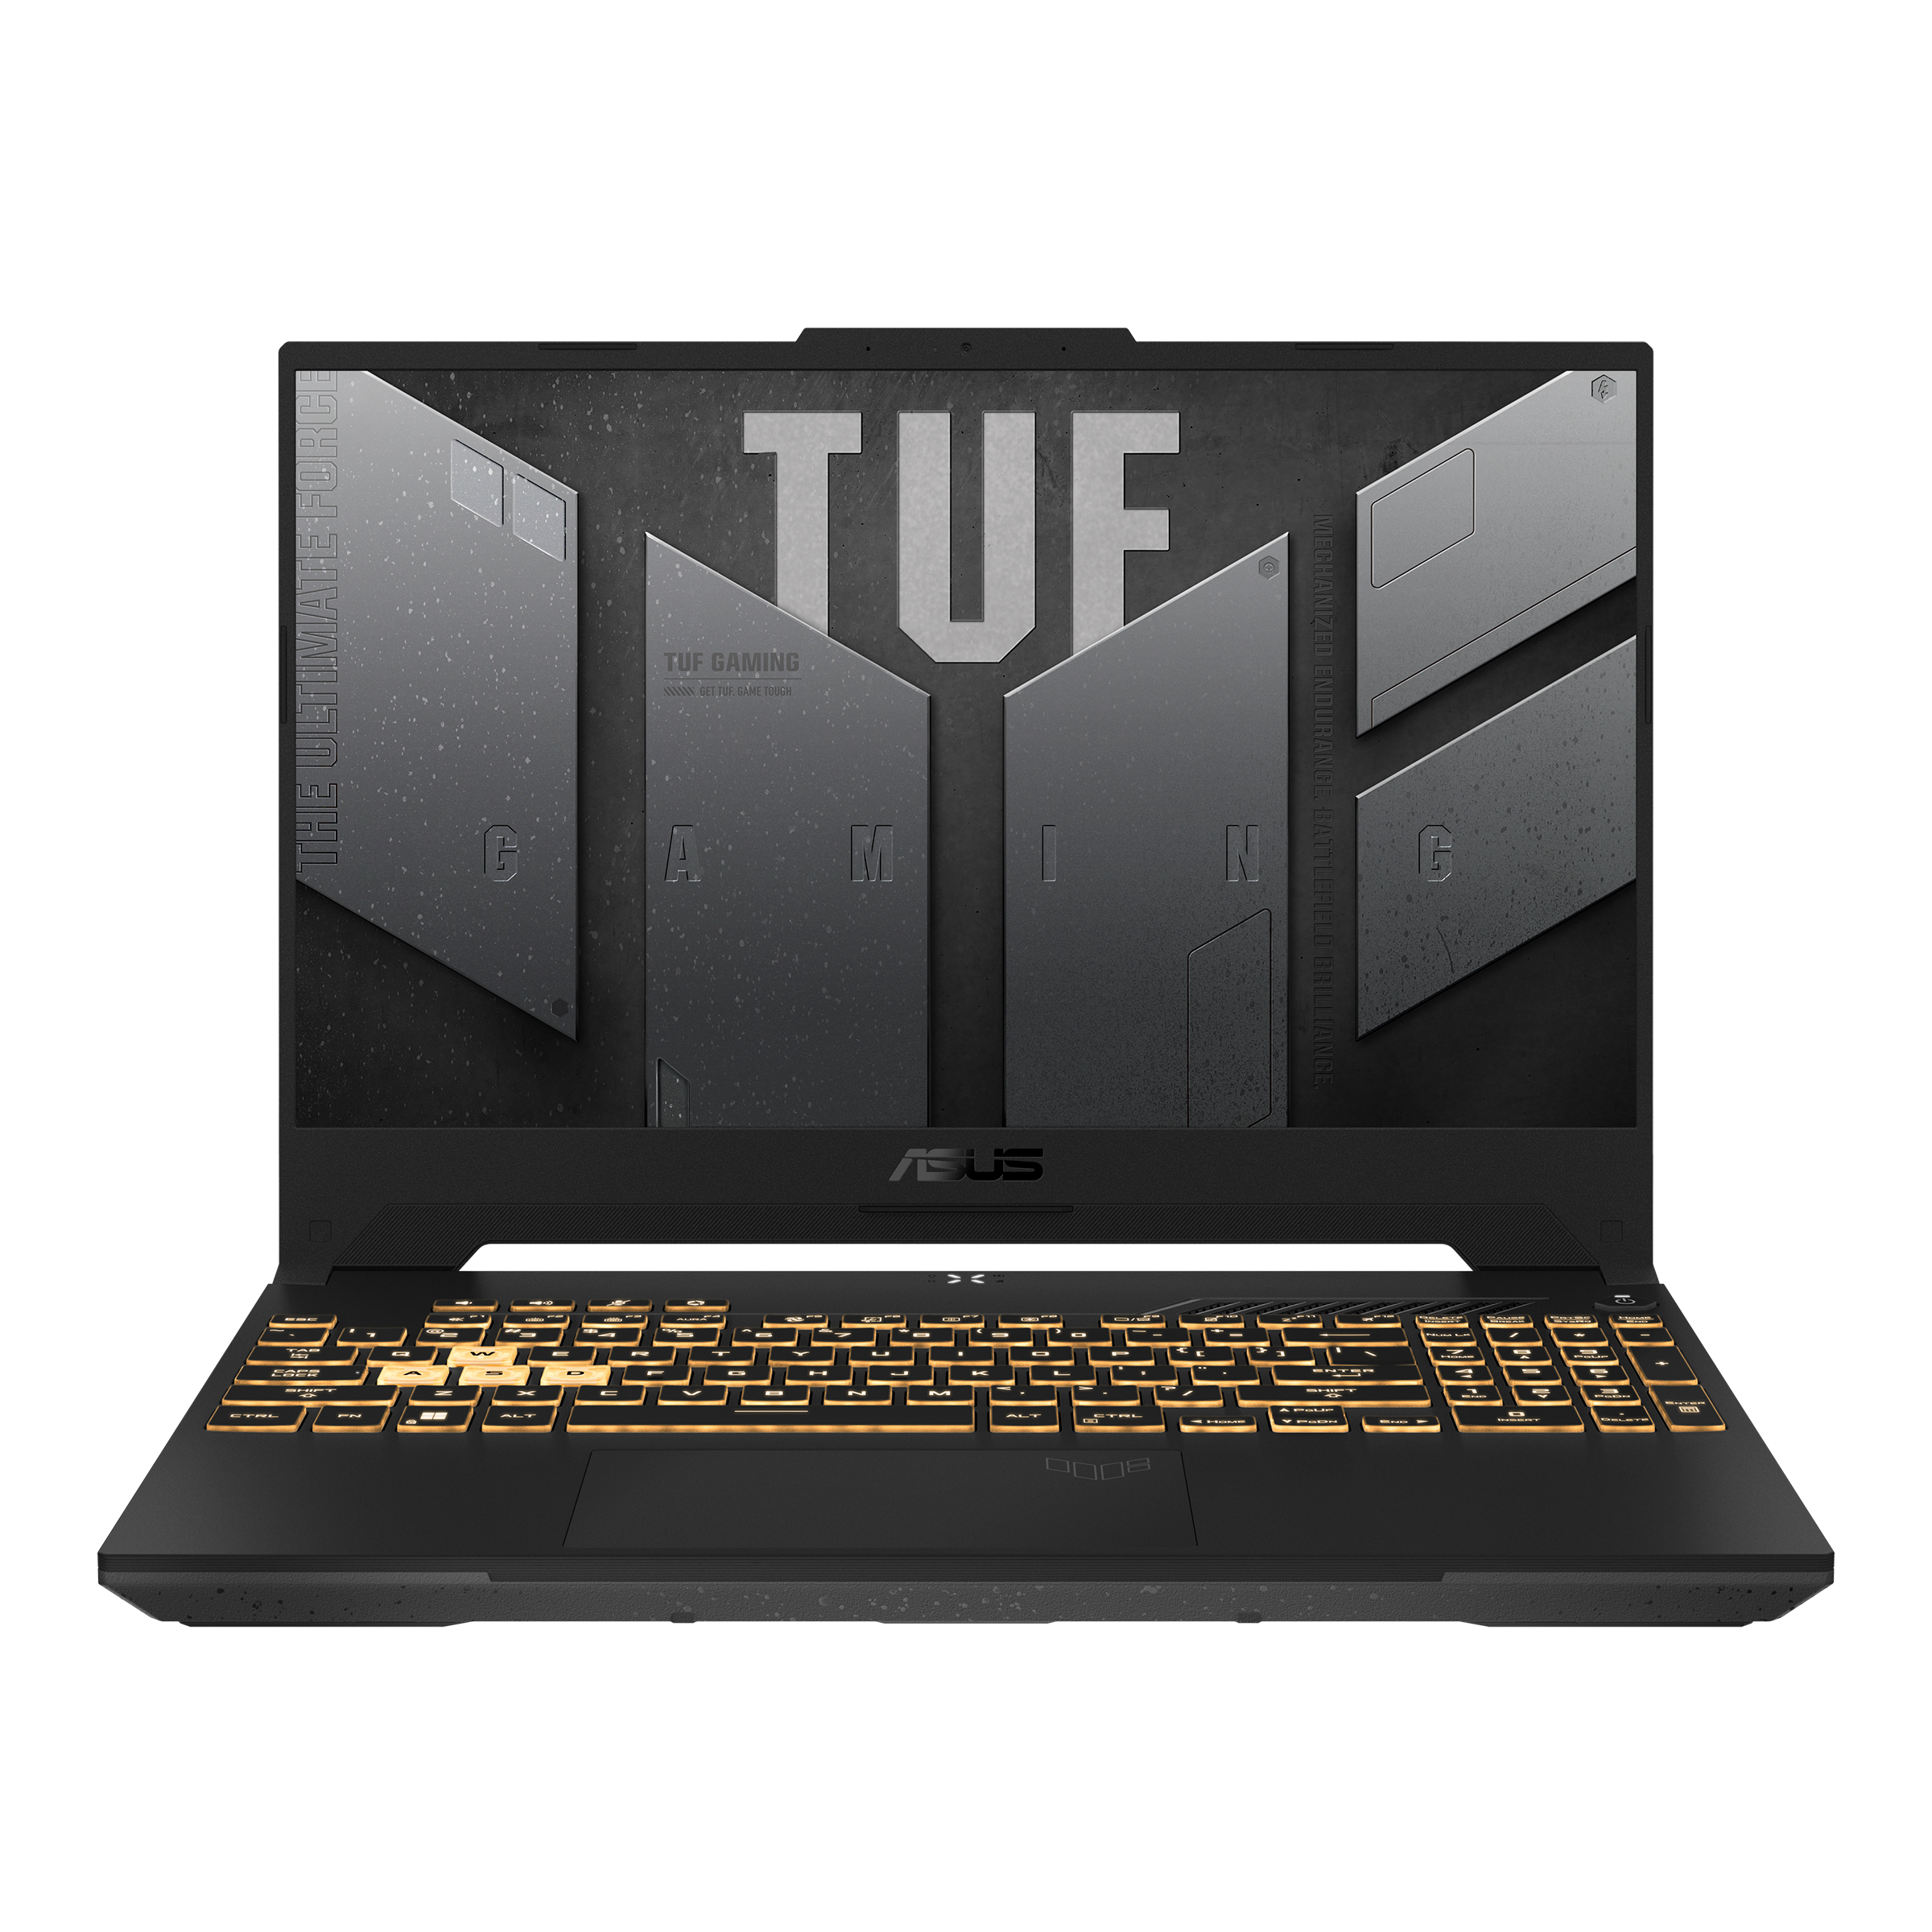 ASUS TUF Gaming F15 (2022) | TUF Gaming | ゲーミングノートパソコン 